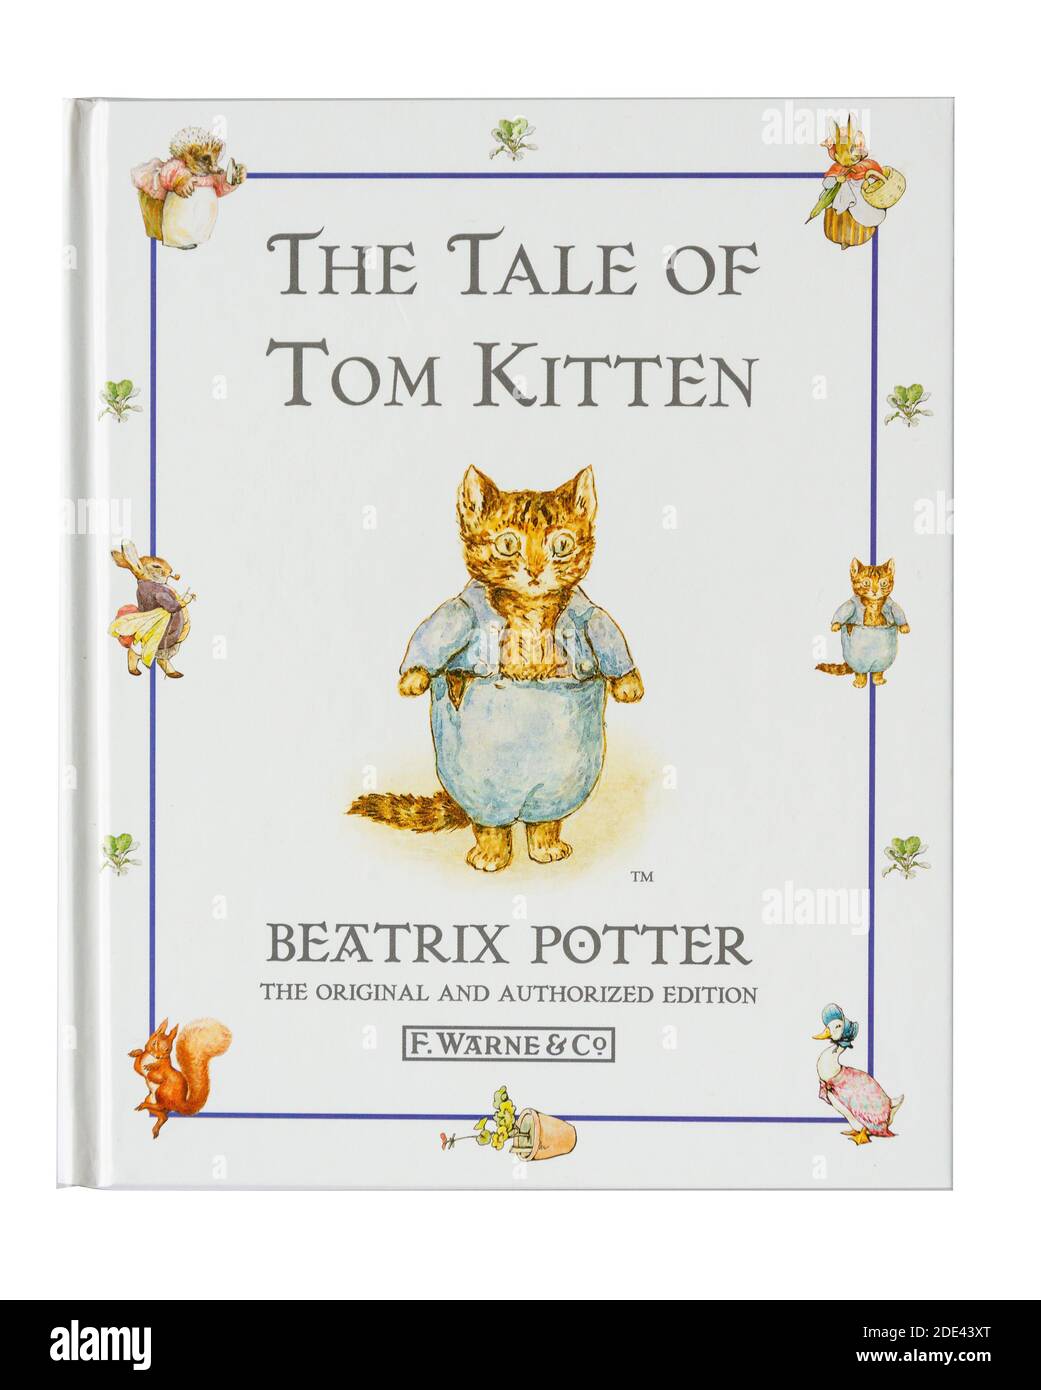 Livre pour enfants « The Tale of Tom Kitten » de Beatrix Potter, Grand Londres, Angleterre, Royaume-Uni Banque D'Images